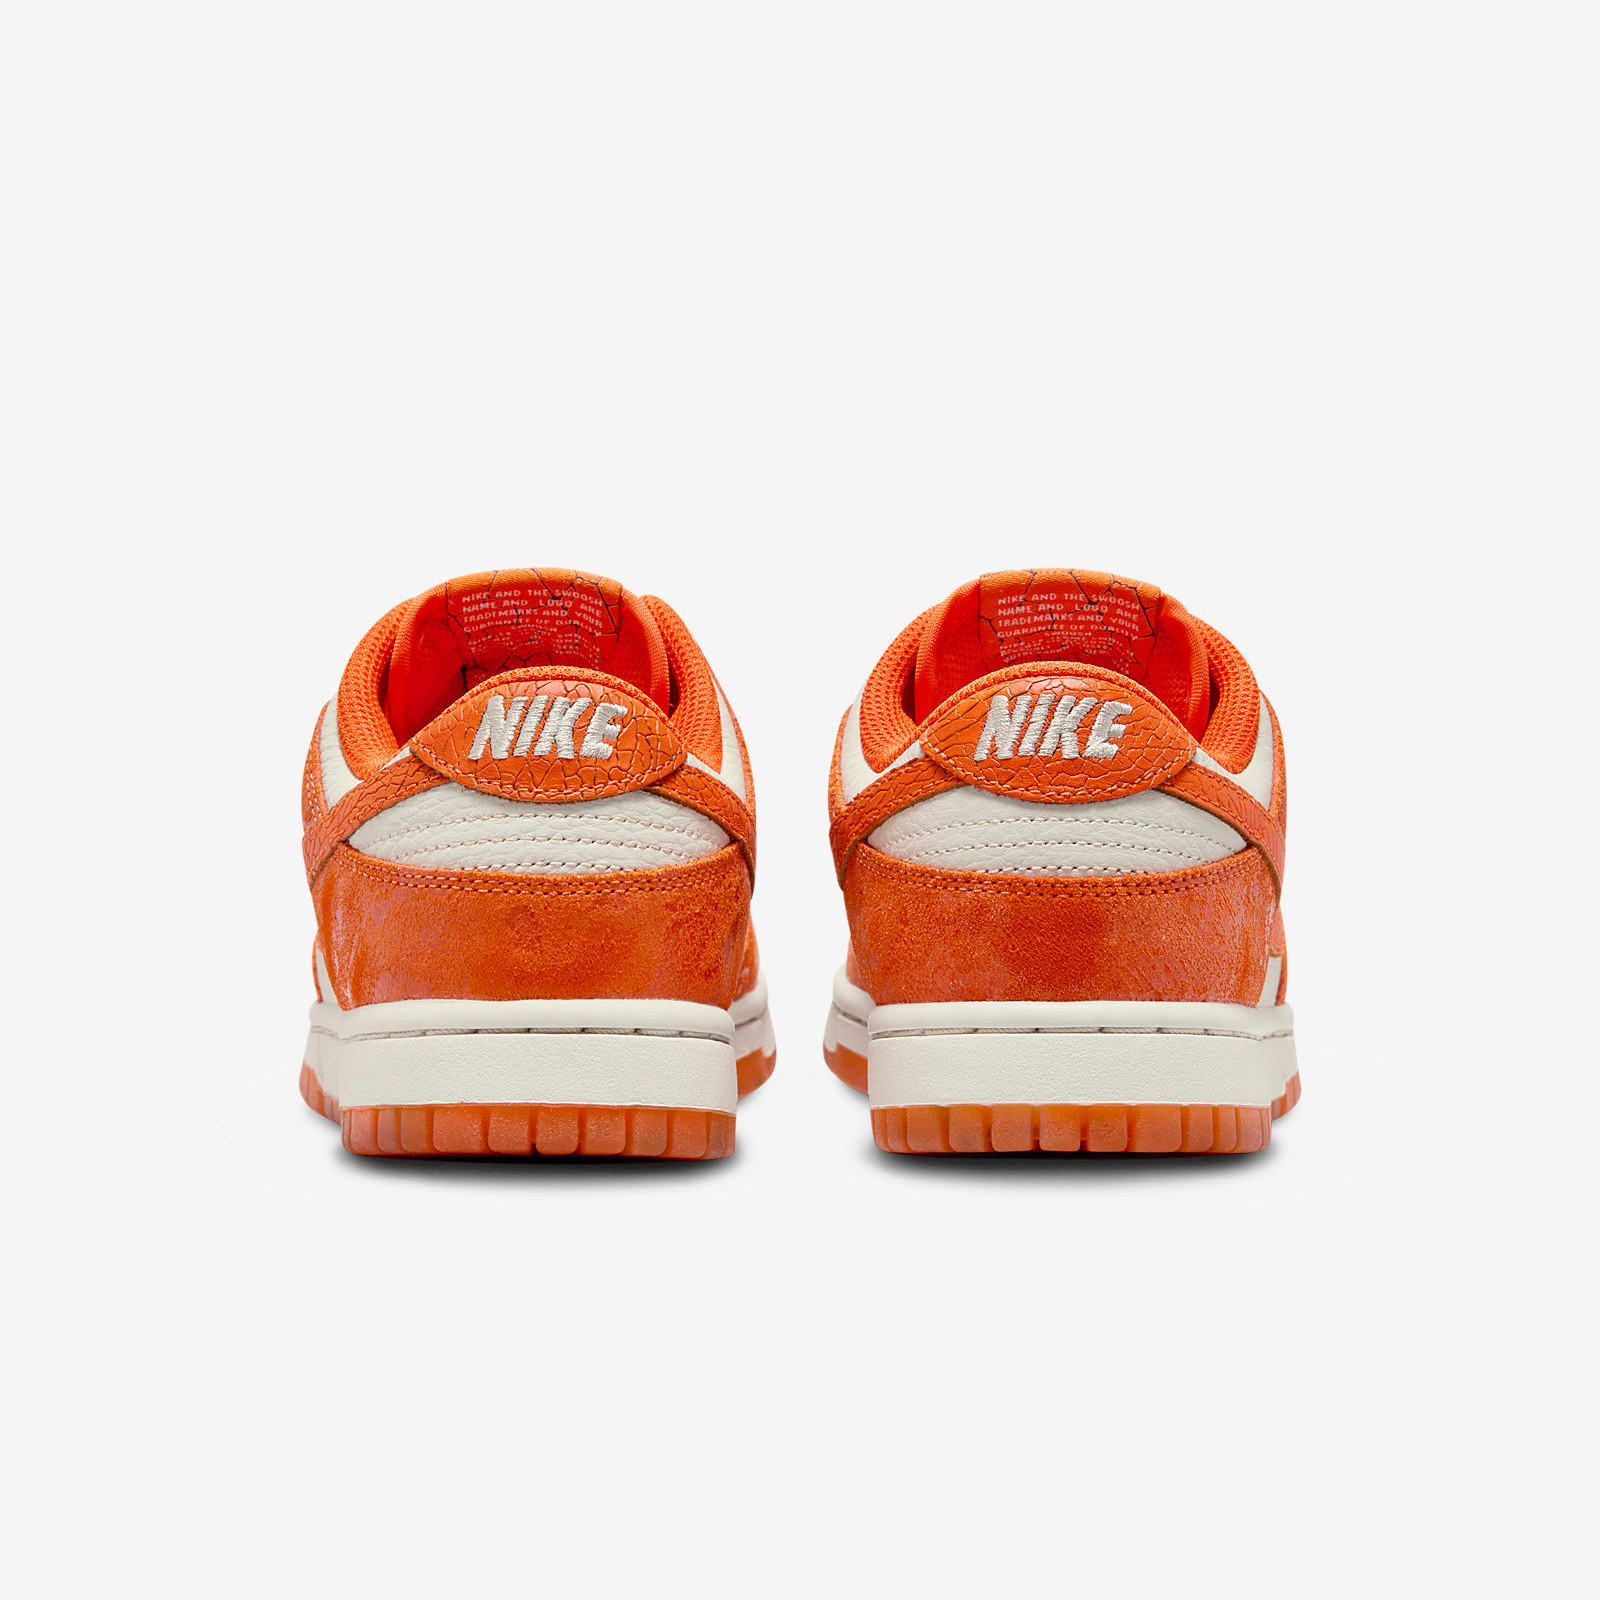 Nike Dunk Low
« Total Orange »